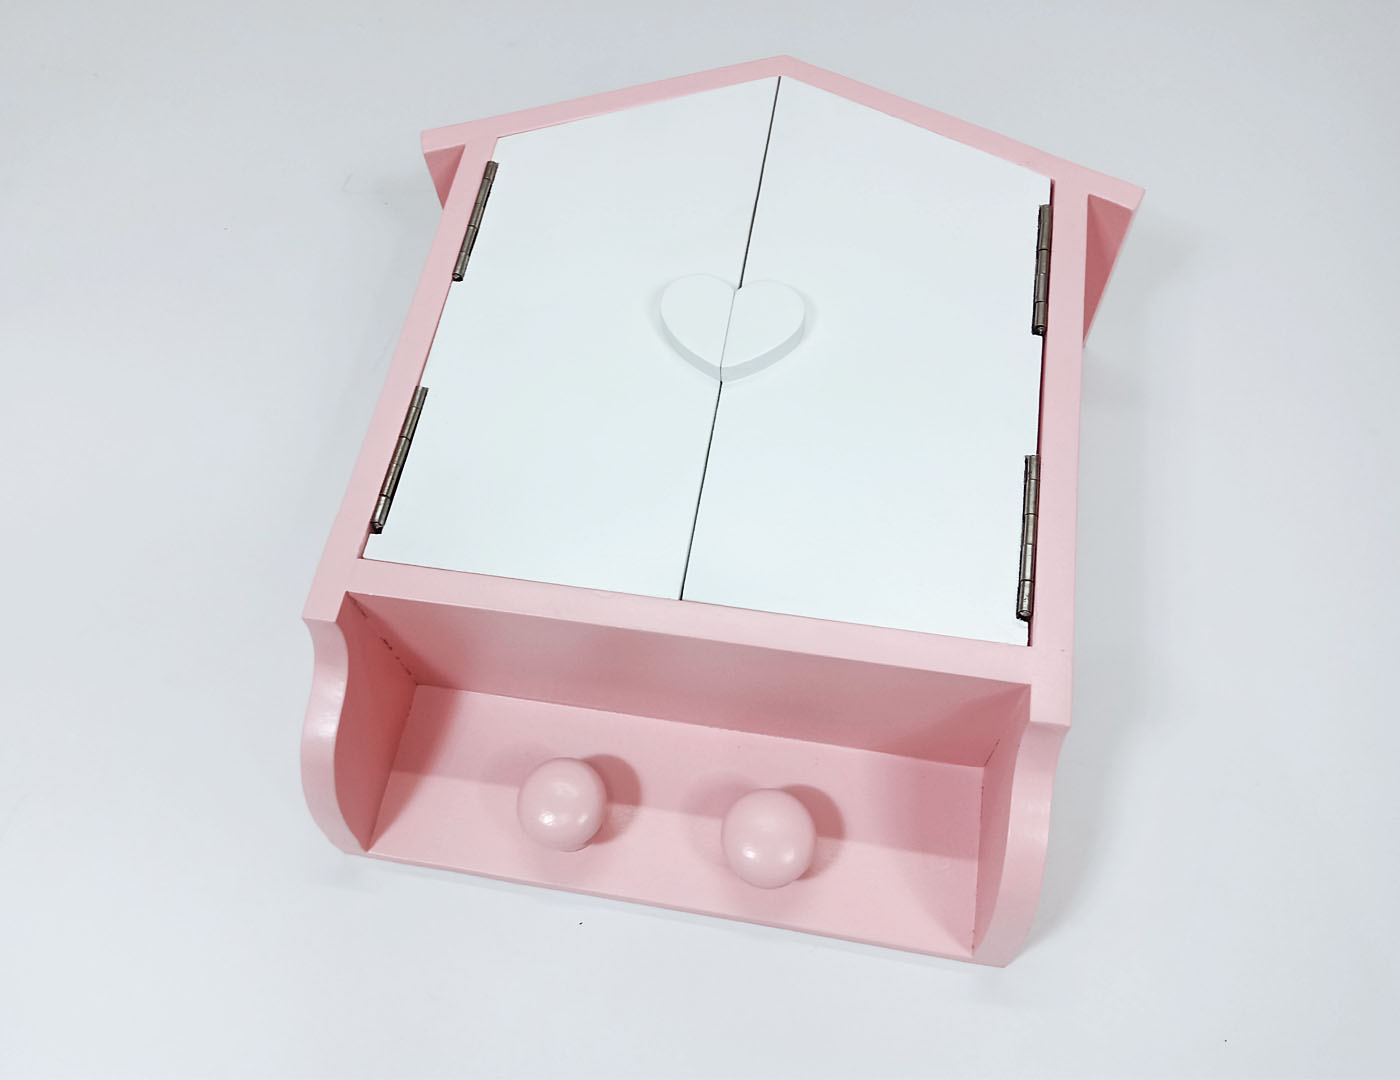  Tempat  kotak obat  model  rumah Blessme artwork